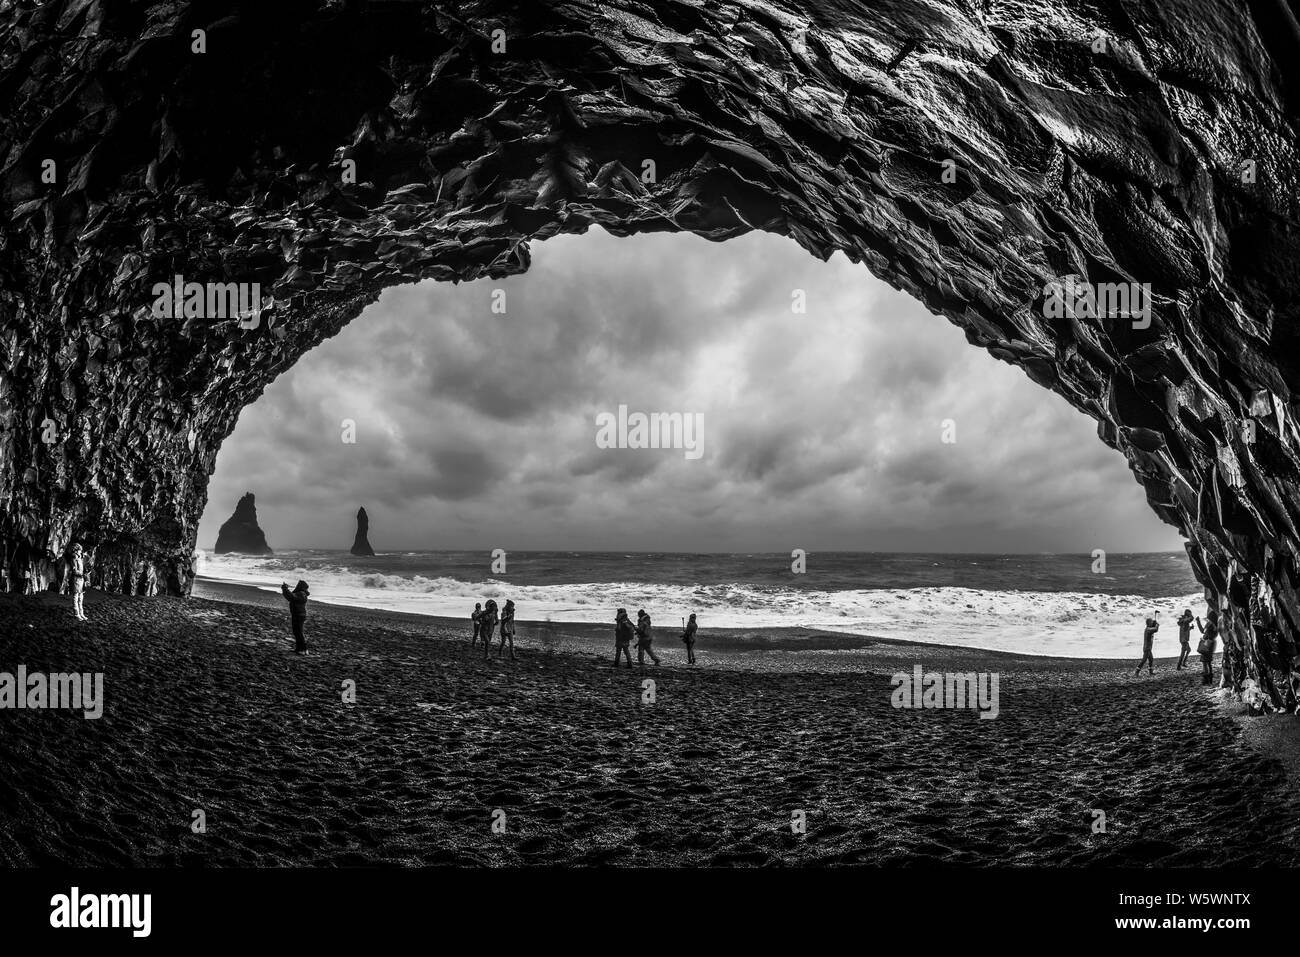 Les touristes à la découverte de rares formations grotte rocheuse dans la plage de sable noir, l'Islande Banque D'Images